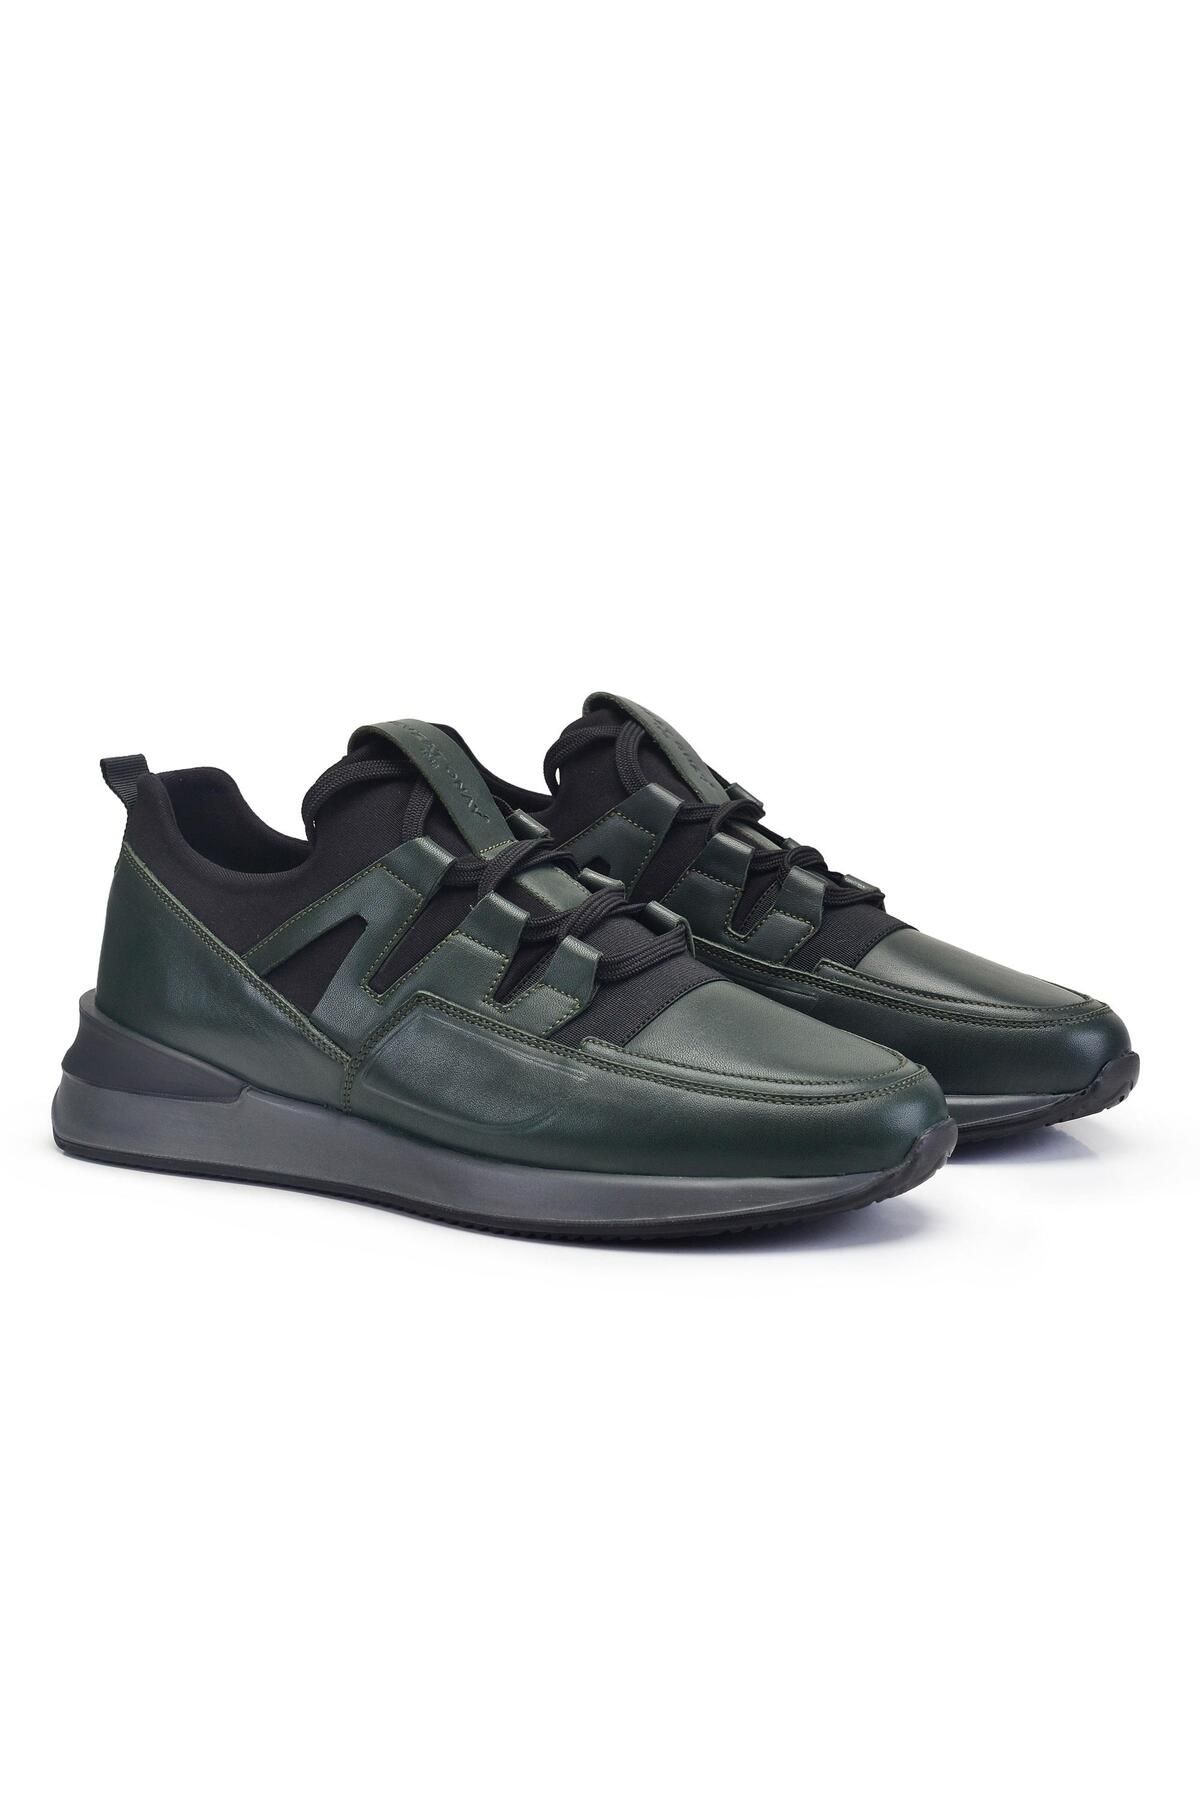 Nevzat Onay Yeşil Bağcıklı Erkek Sneaker -95712-